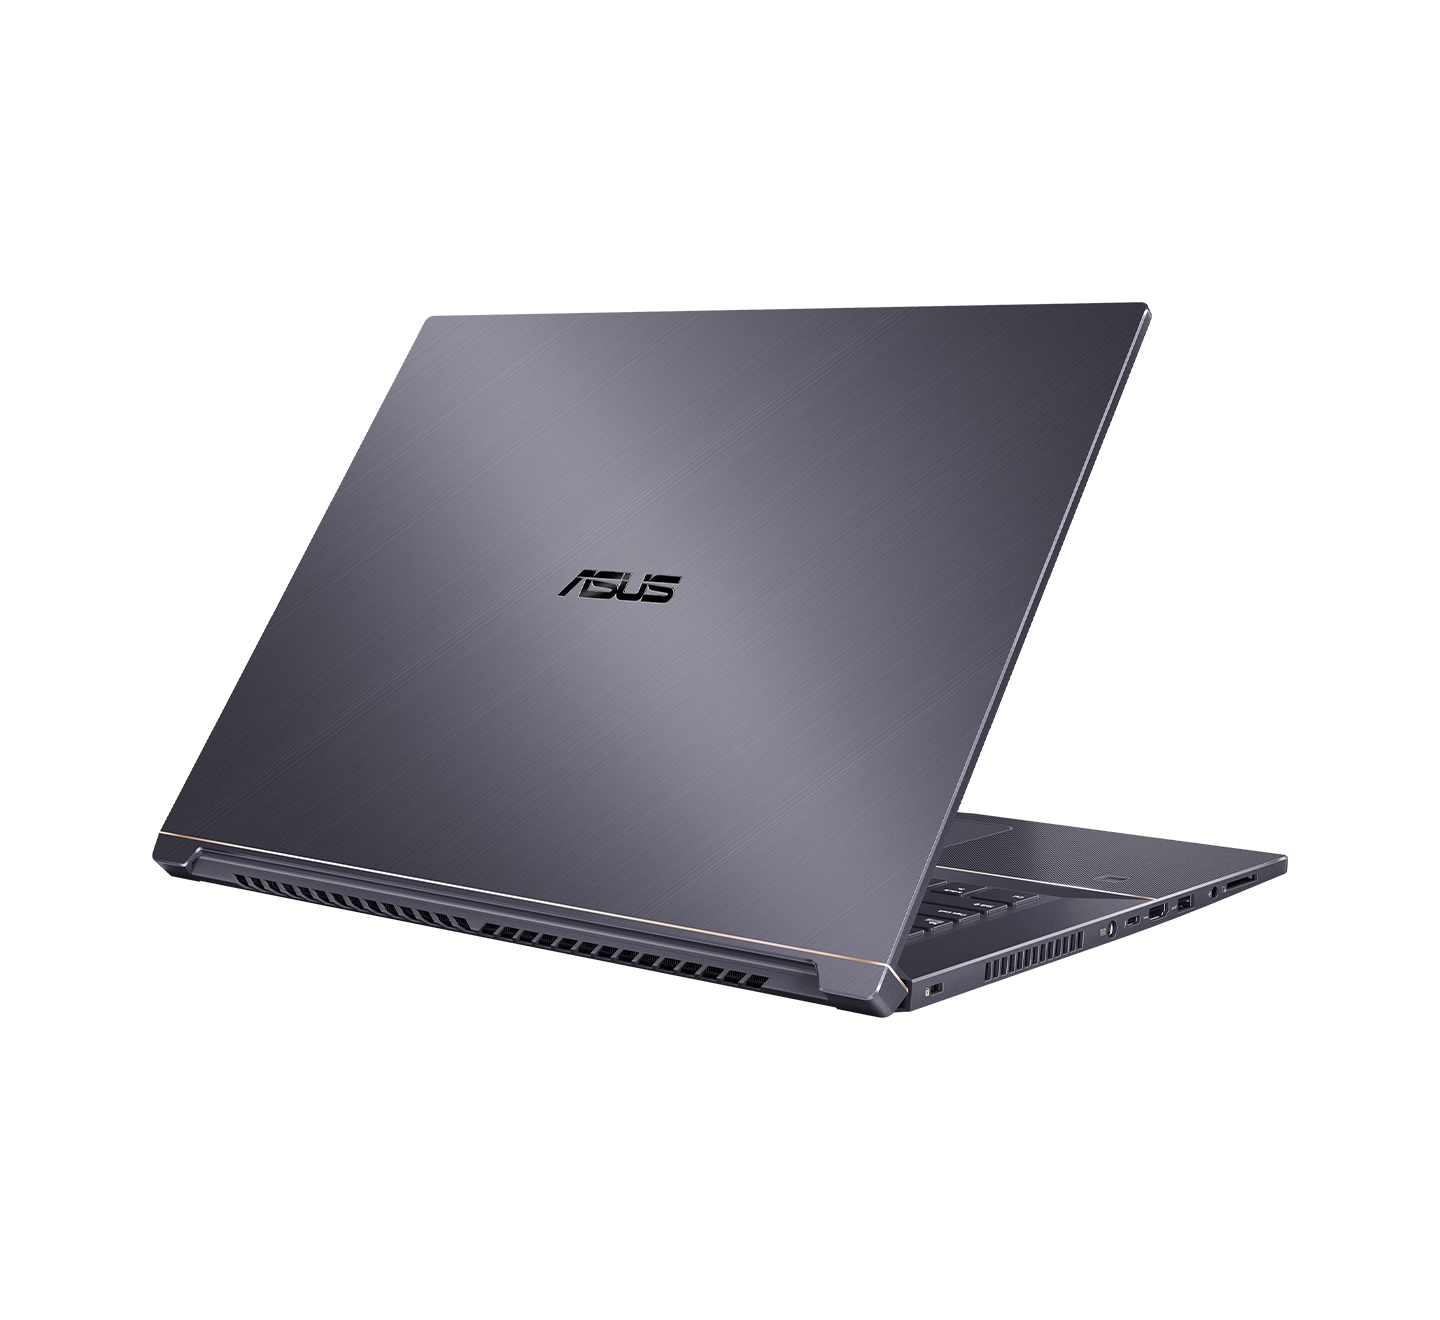 ProArt Studiobook Pro 17 W700 Laptop: Core i7 in UAE, Oman